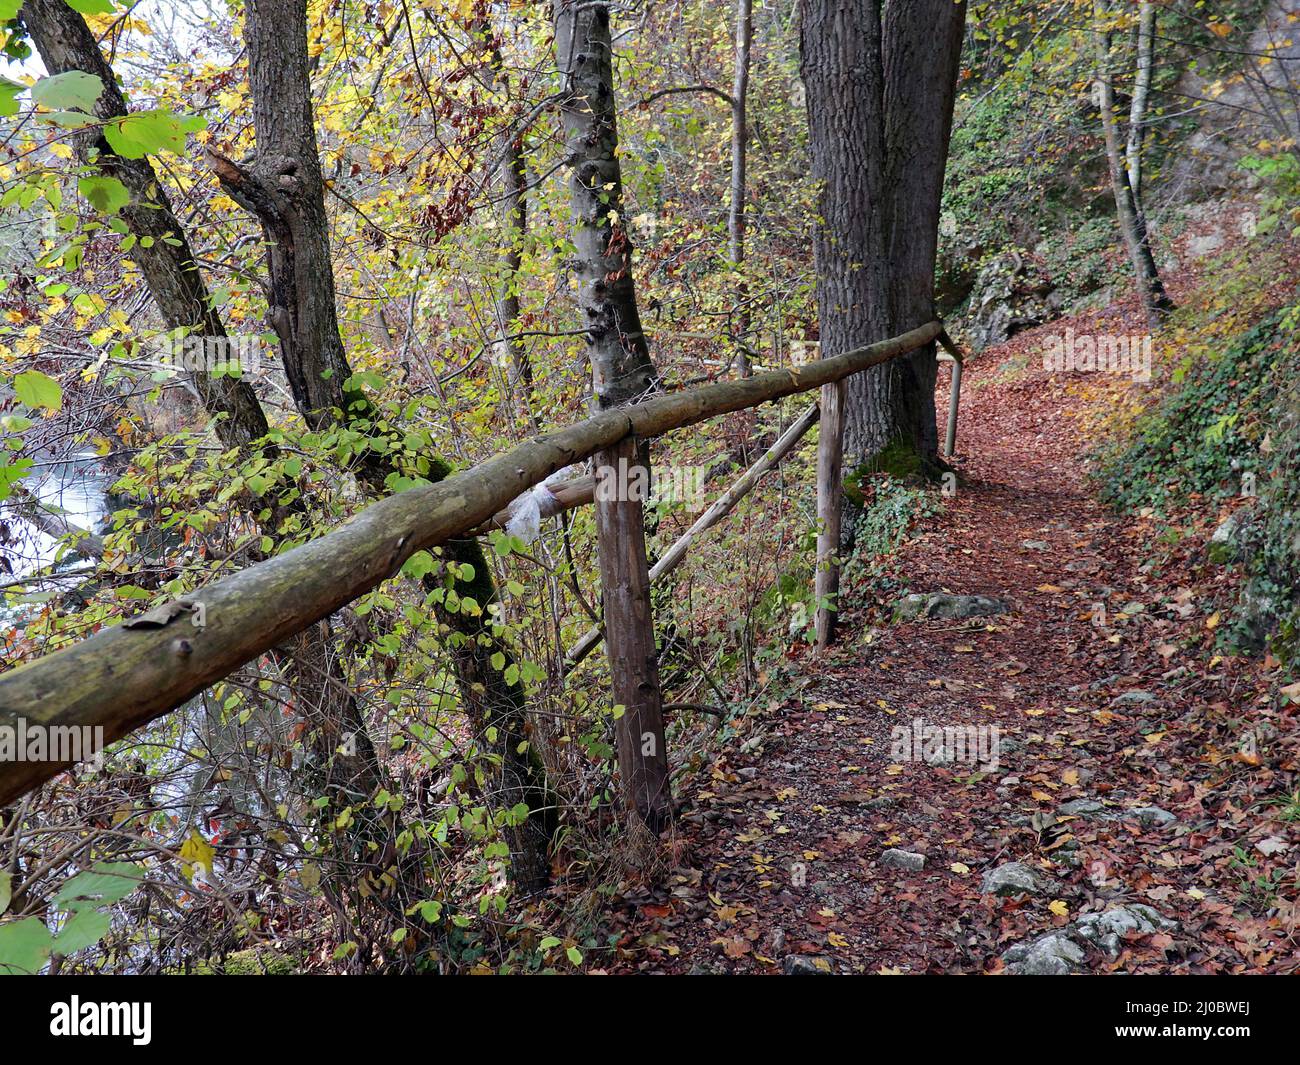 Sentier forestier en automne, Jura souabe, Allemagne Banque D'Images